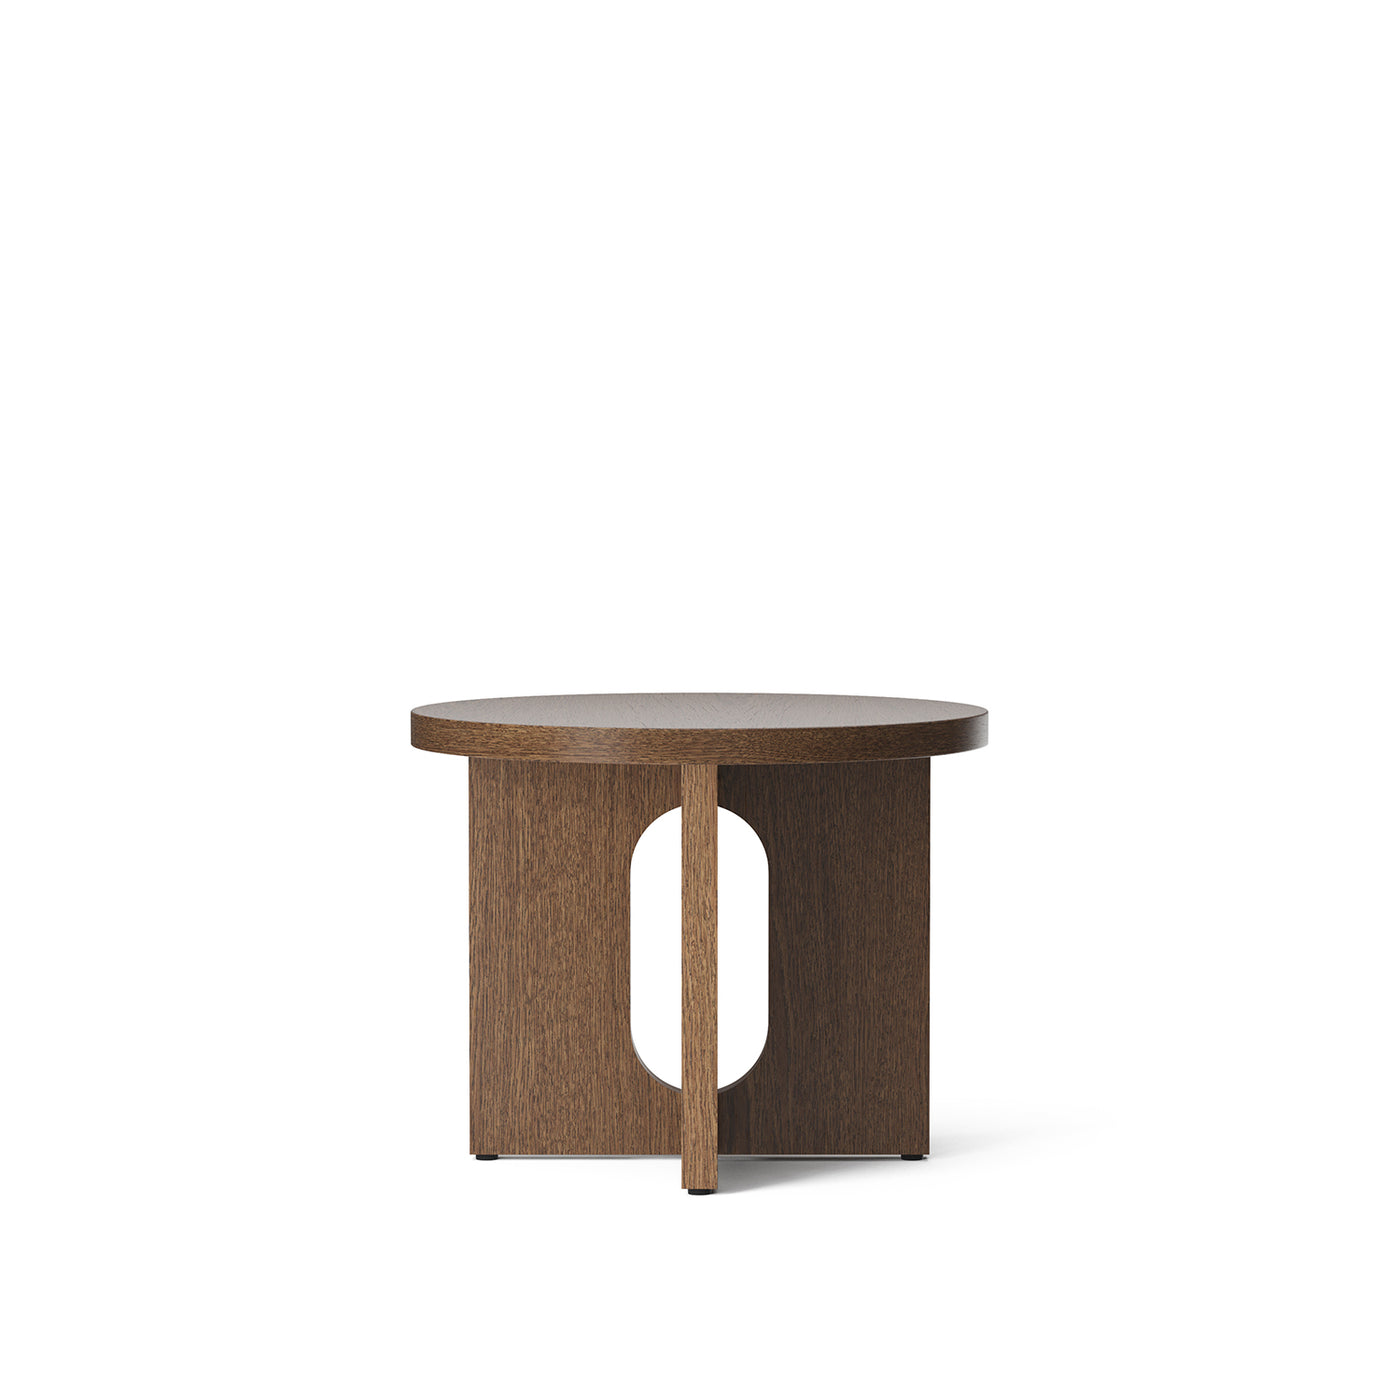 dřevěný noční stolek, dubový noční stůl, Menu space Androgyne, Menu cz, Romein concept store, luxusní nábytek, nábytek do ložnice